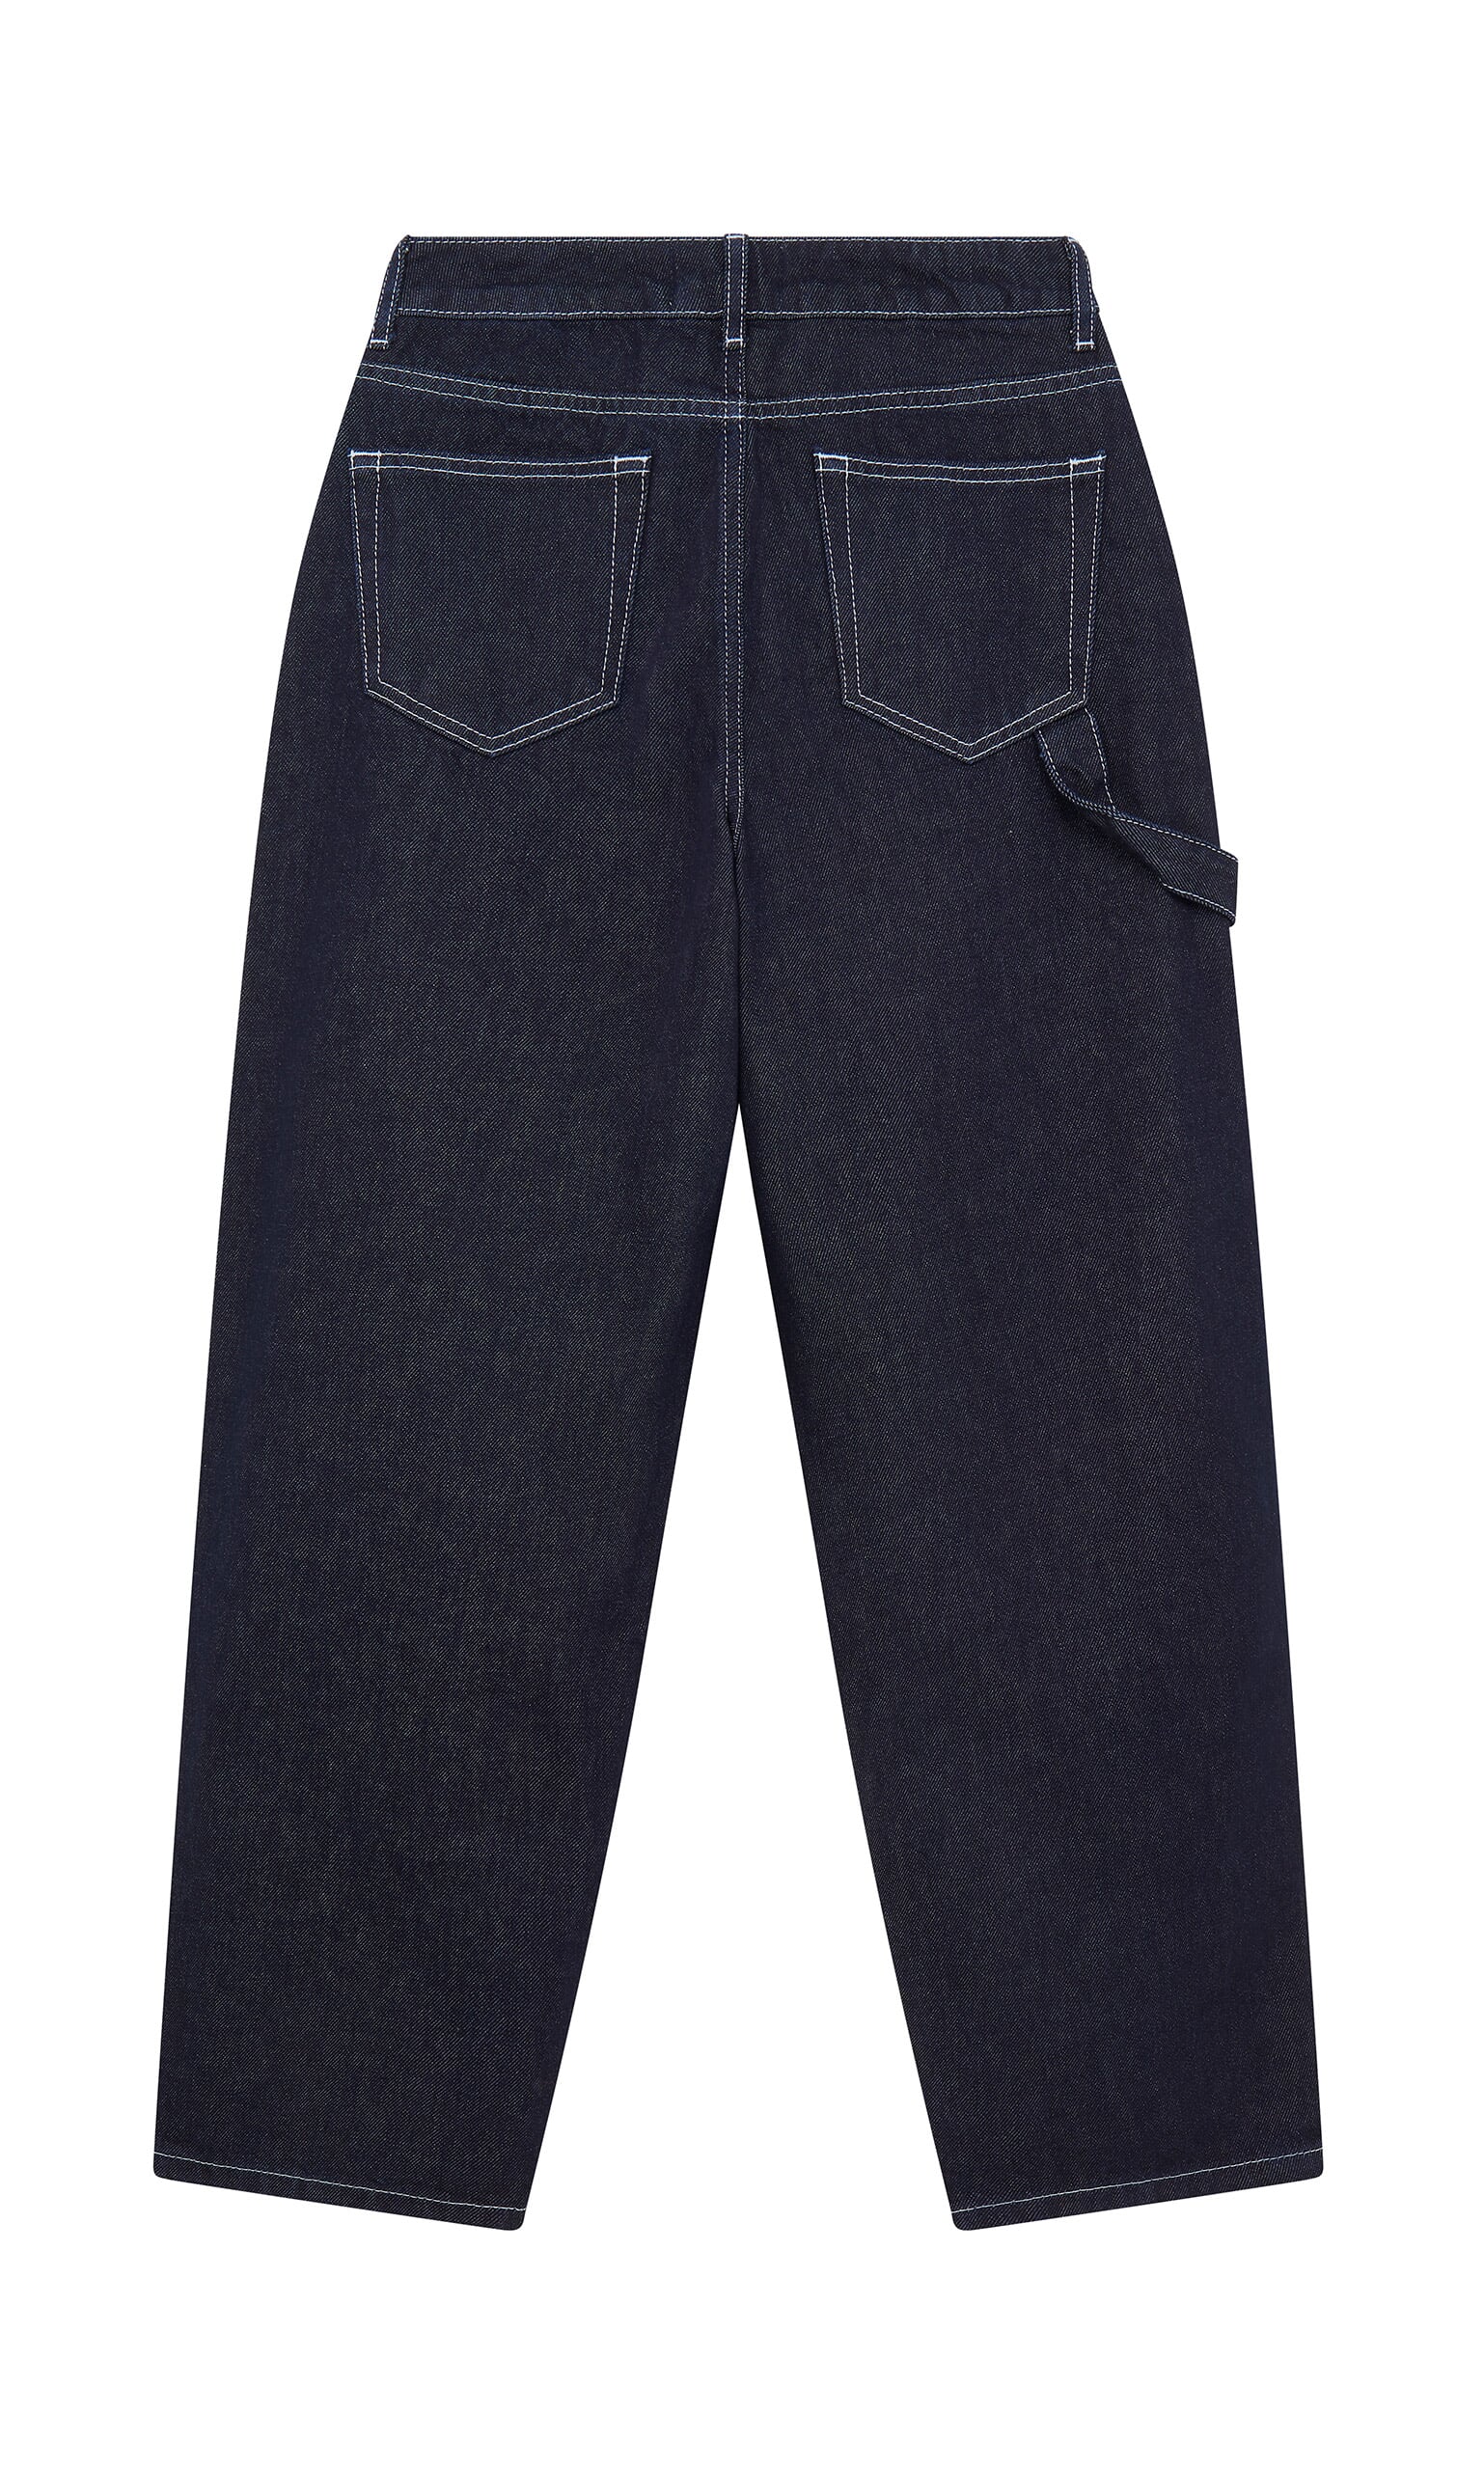 Otto carpenter jeans - Plümo Ltd